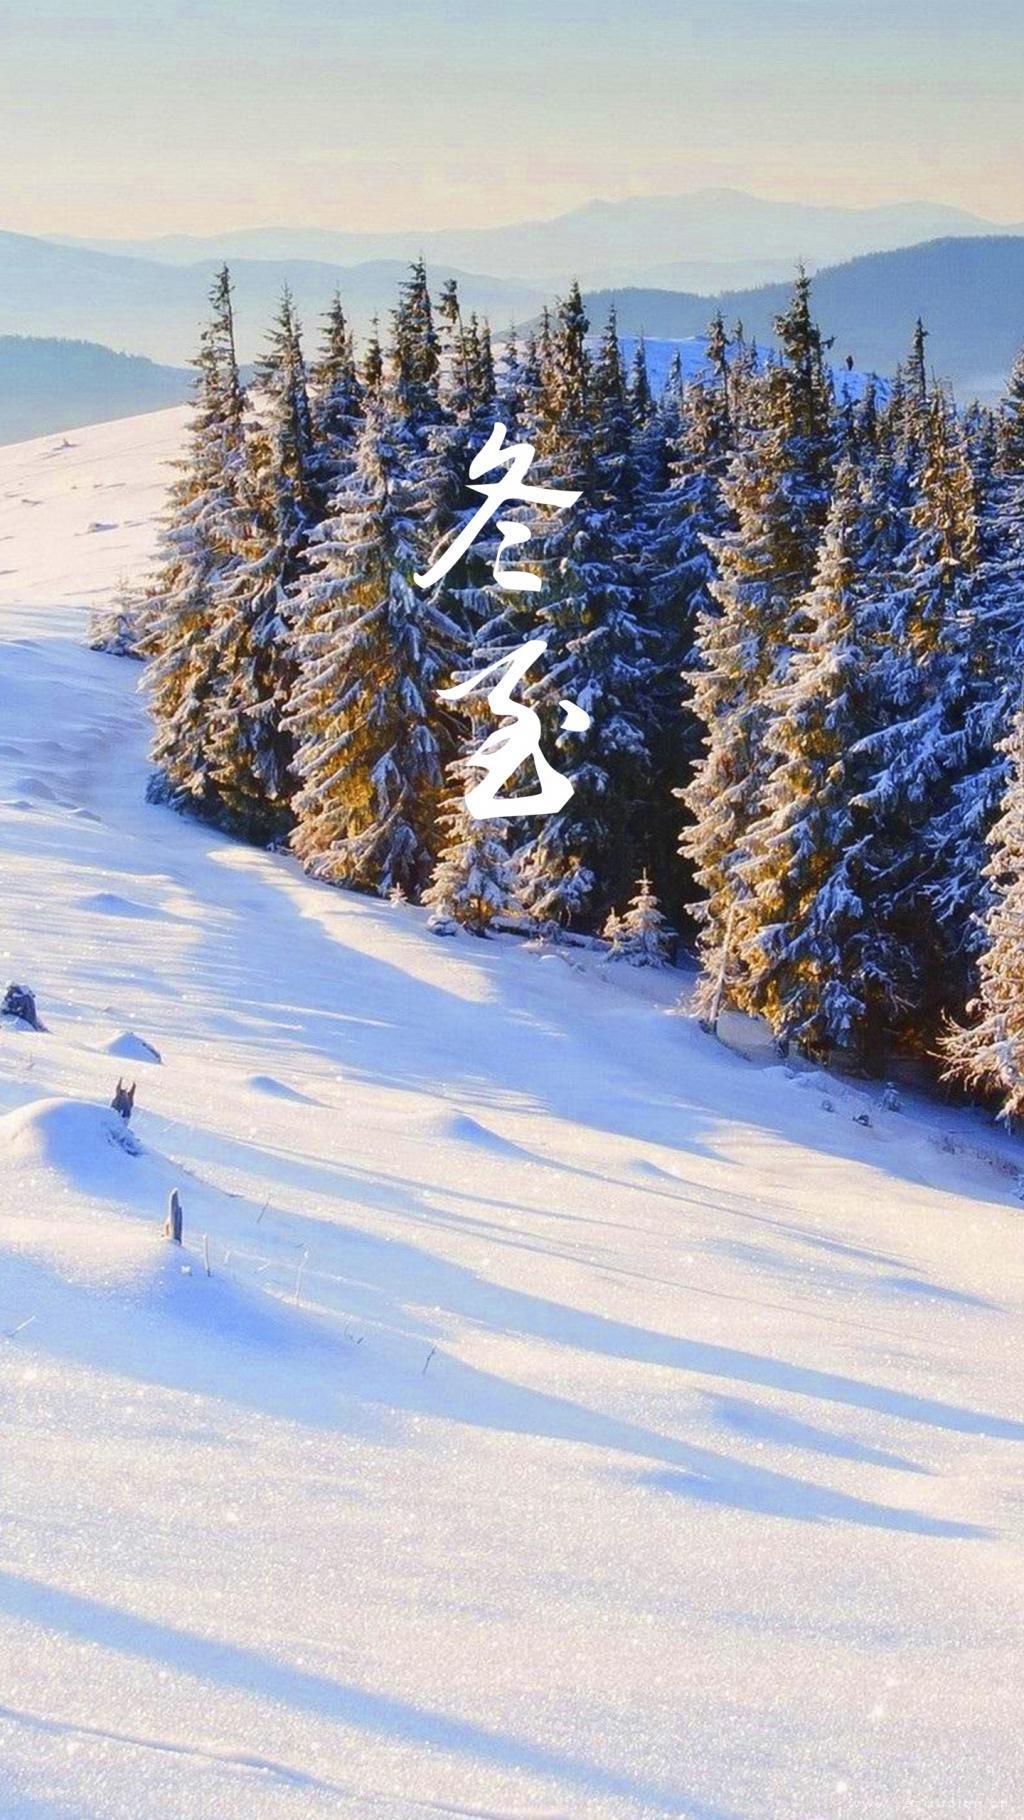 冬至雪景唯美高清风景手机壁纸图片